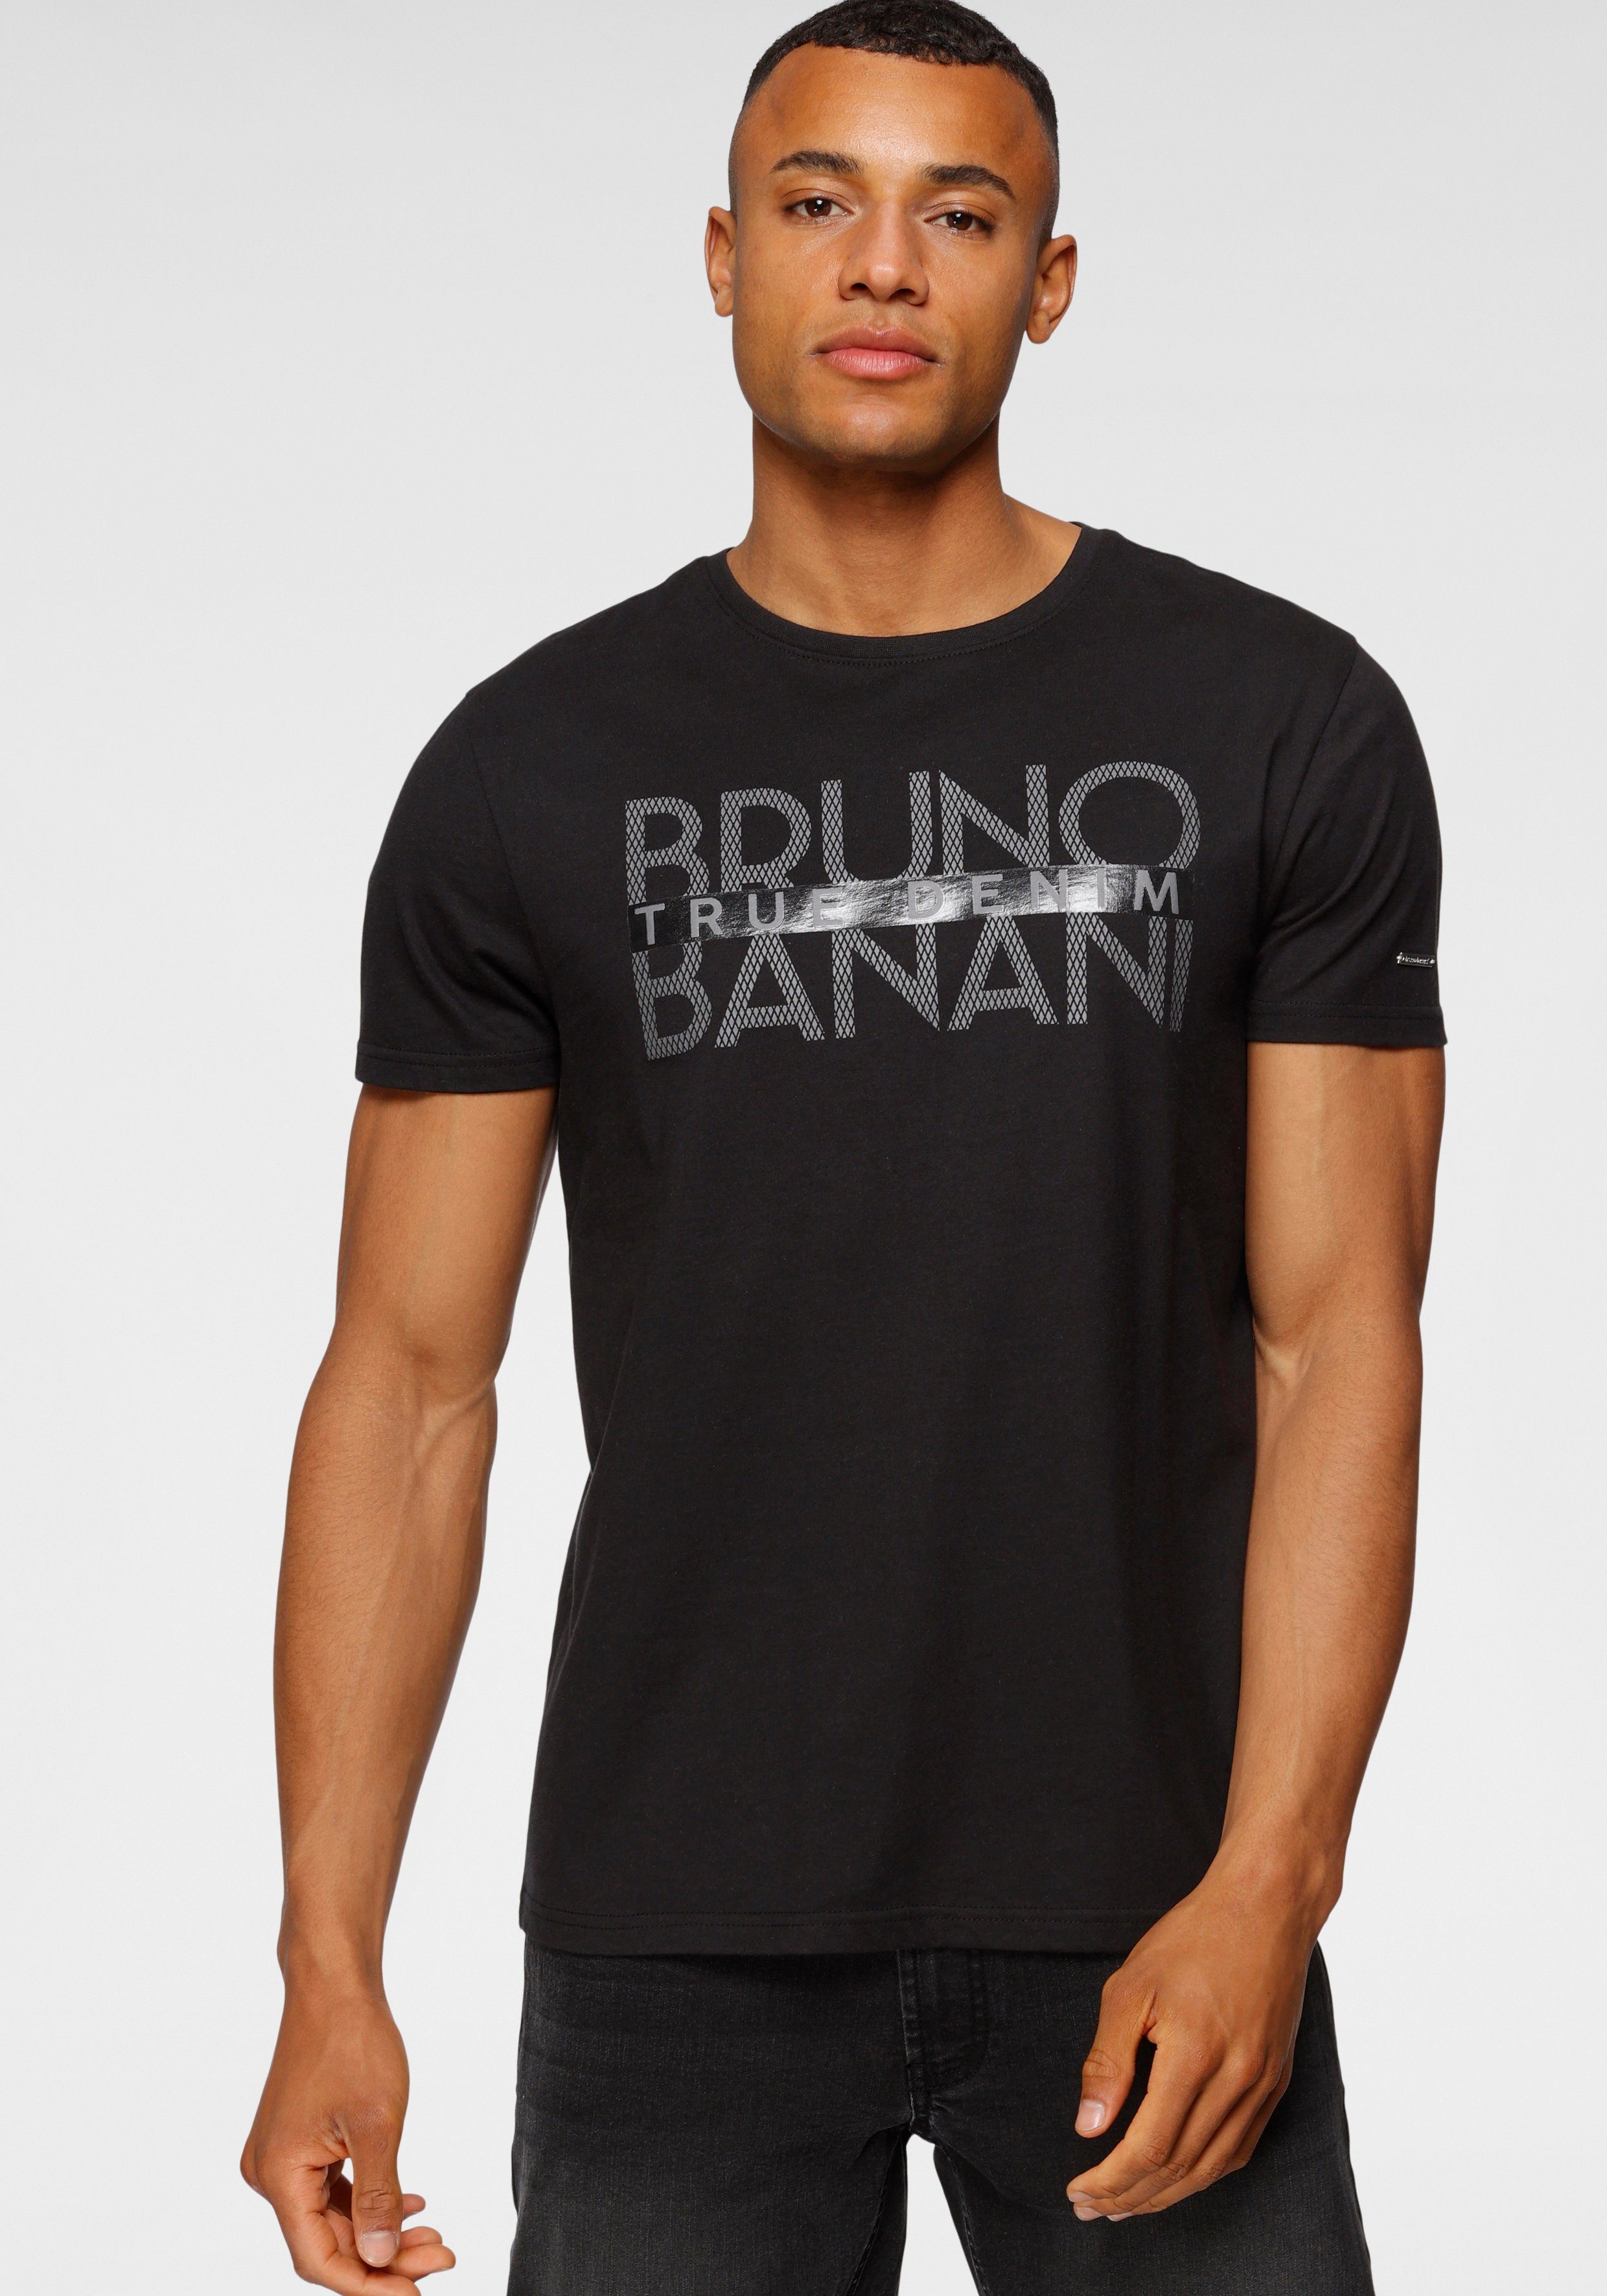 Bruno Banani T-Shirt glänzendem mit Print schwarz